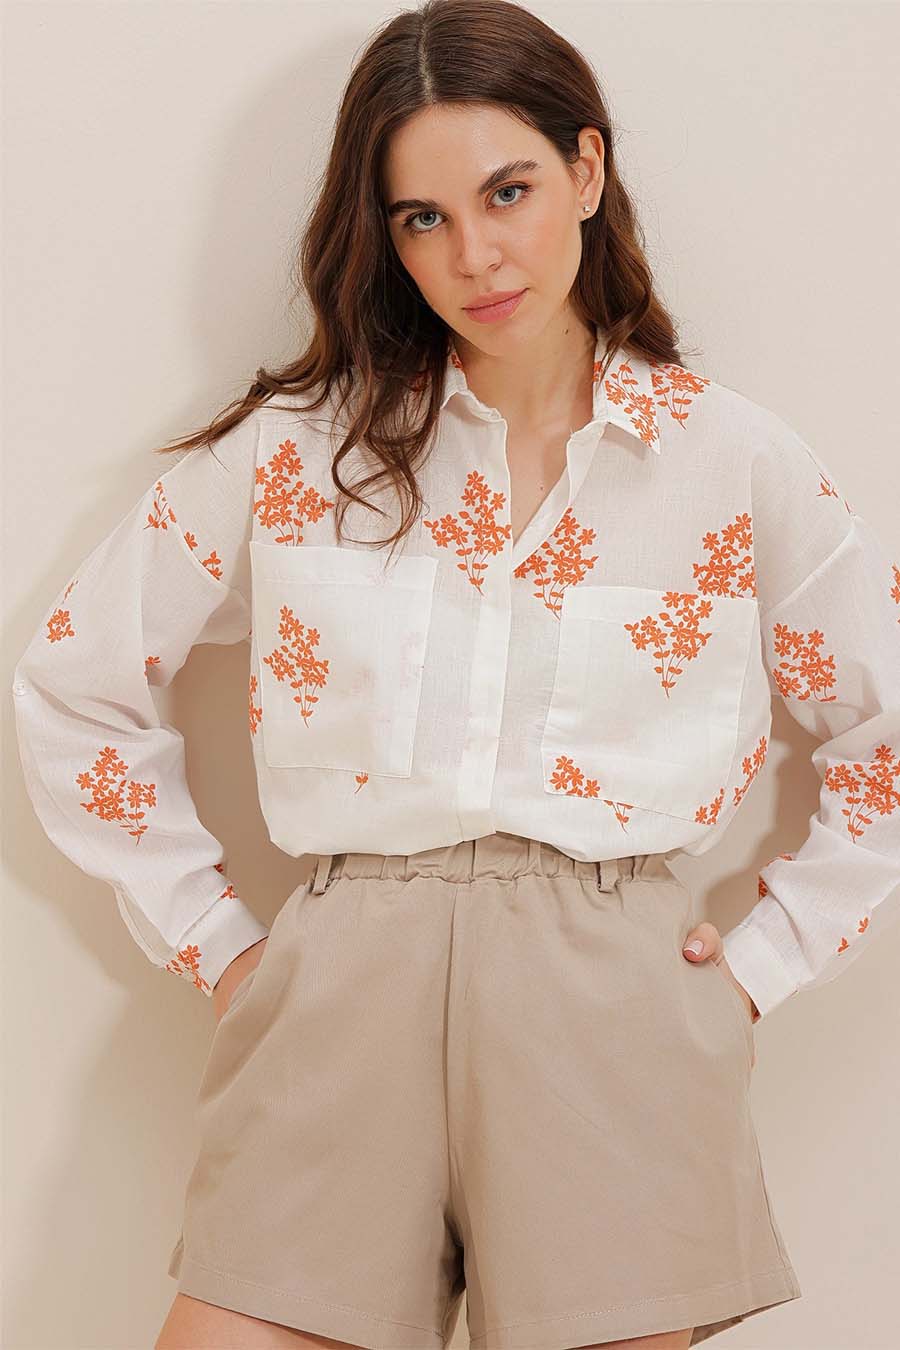 Γυναικείο πουκάμισο Darana, Λευκό/Πορτοκάλι 2